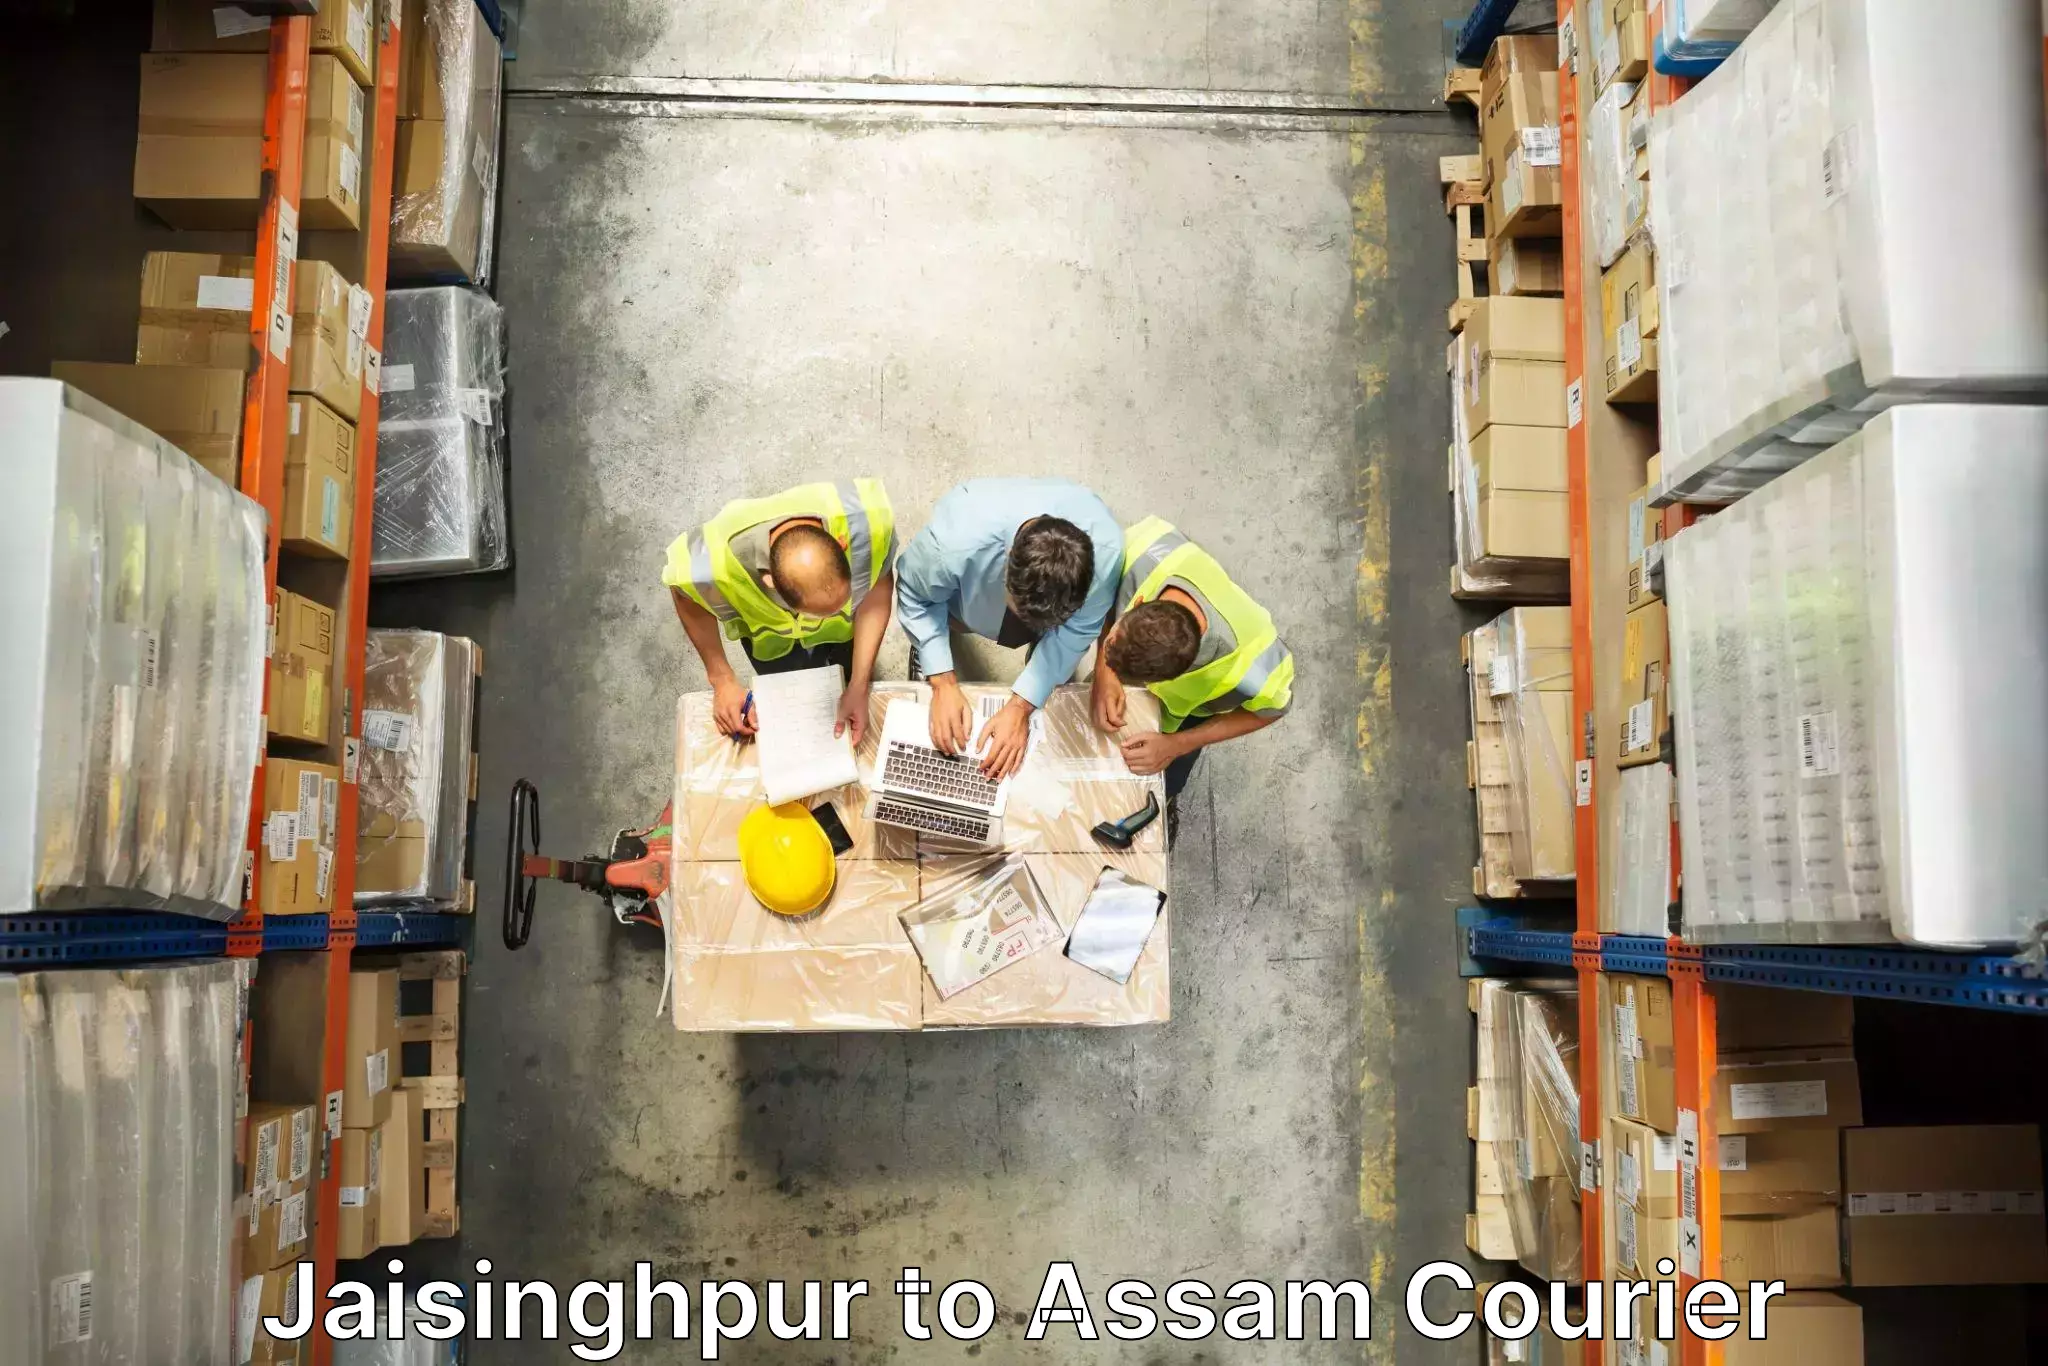 Quality moving and storage Jaisinghpur to Assam